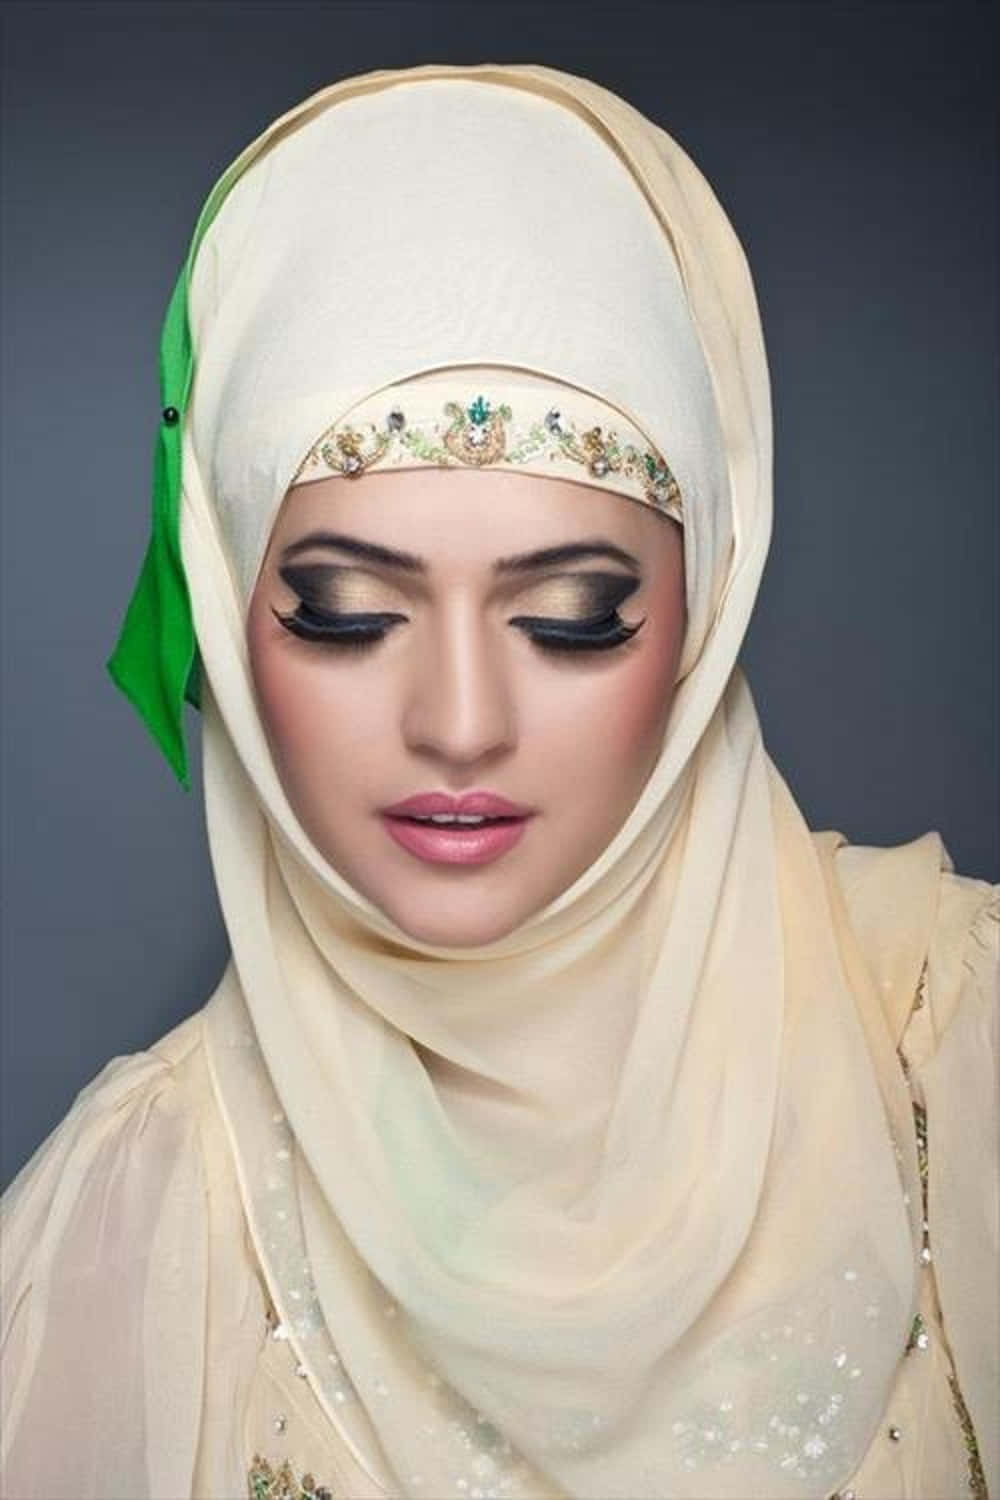 Imagende Una Niña Pakistaní Con Un Elegante Hijab